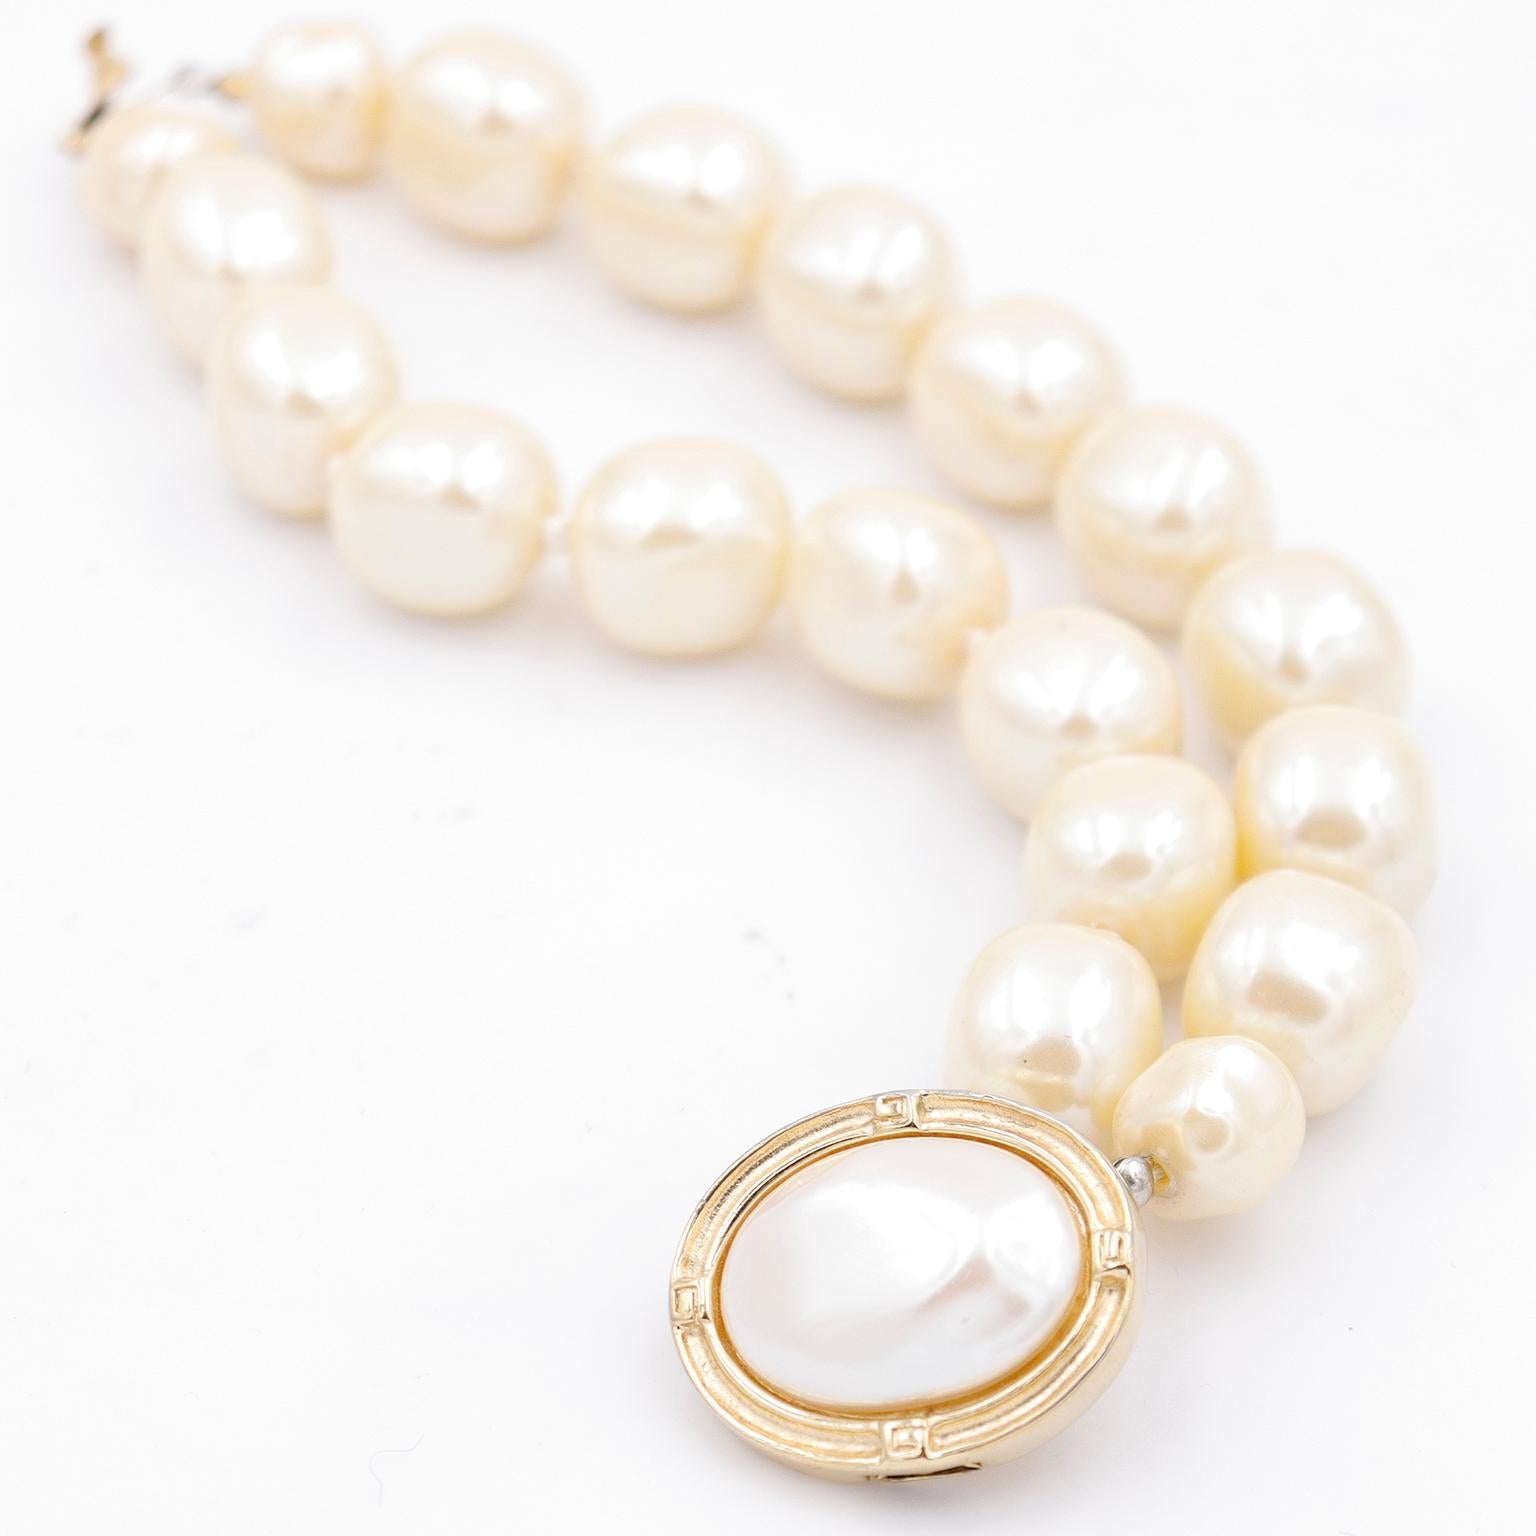 Ce bracelet vintage en fausses perles de style baroque de Givenchy est une belle pièce d'apparat ! Ce magnifique bracelet comporte de grosses fausses perles de forme irrégulière et un fermoir plaqué or avec une grosse perle ovale au centre. Le métal